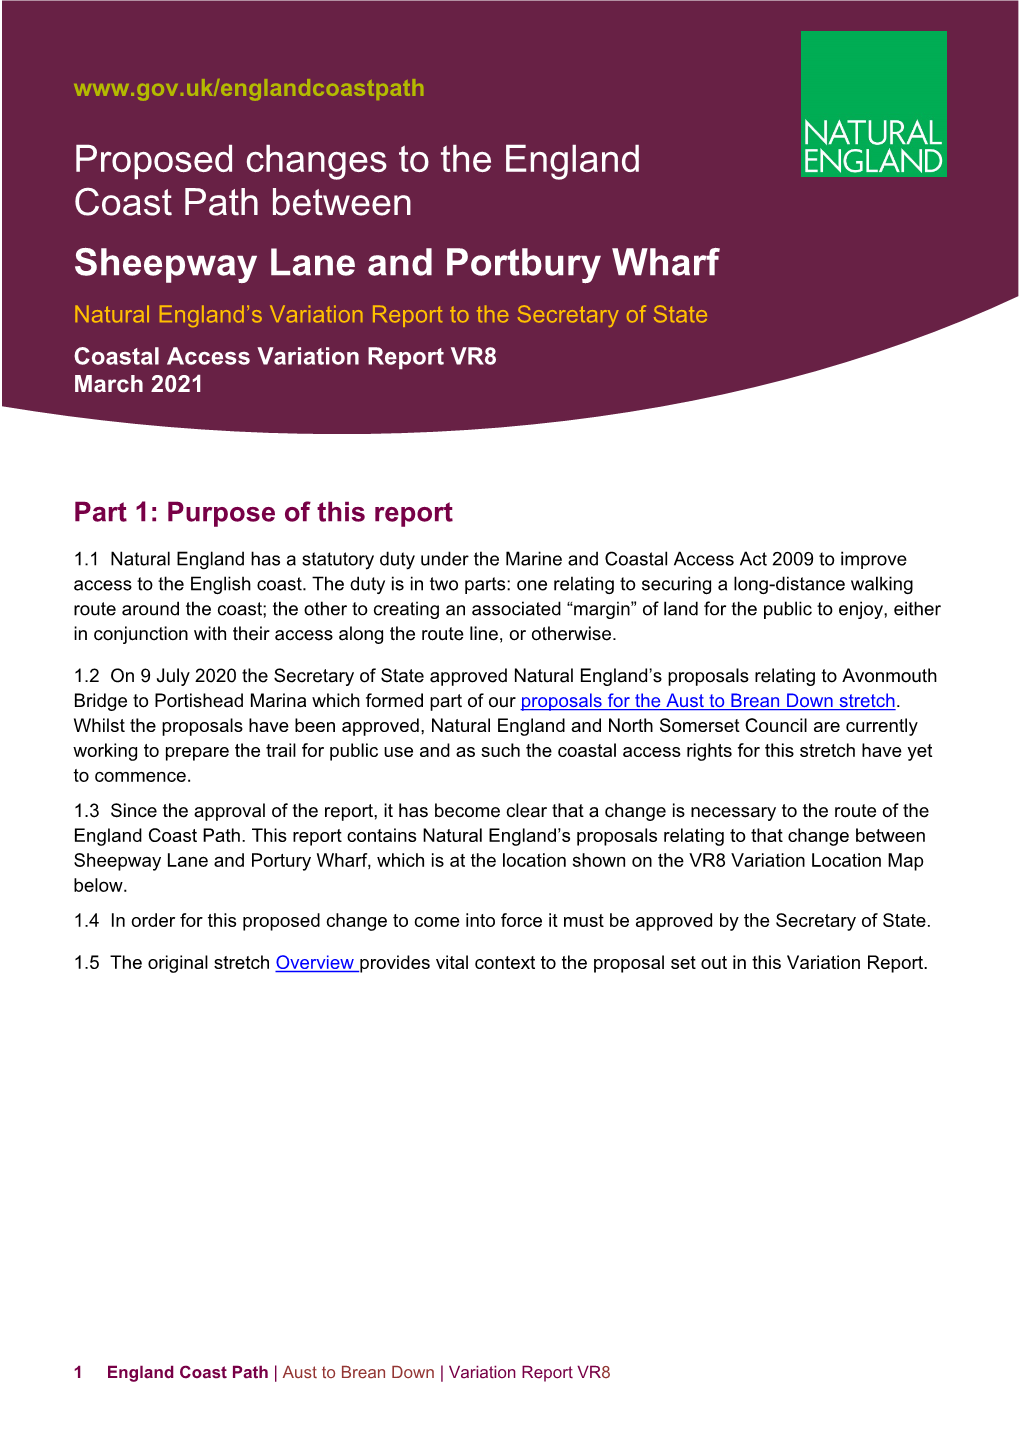 Sheepway Lane to Portbury Wharf Variation Report (VR8)